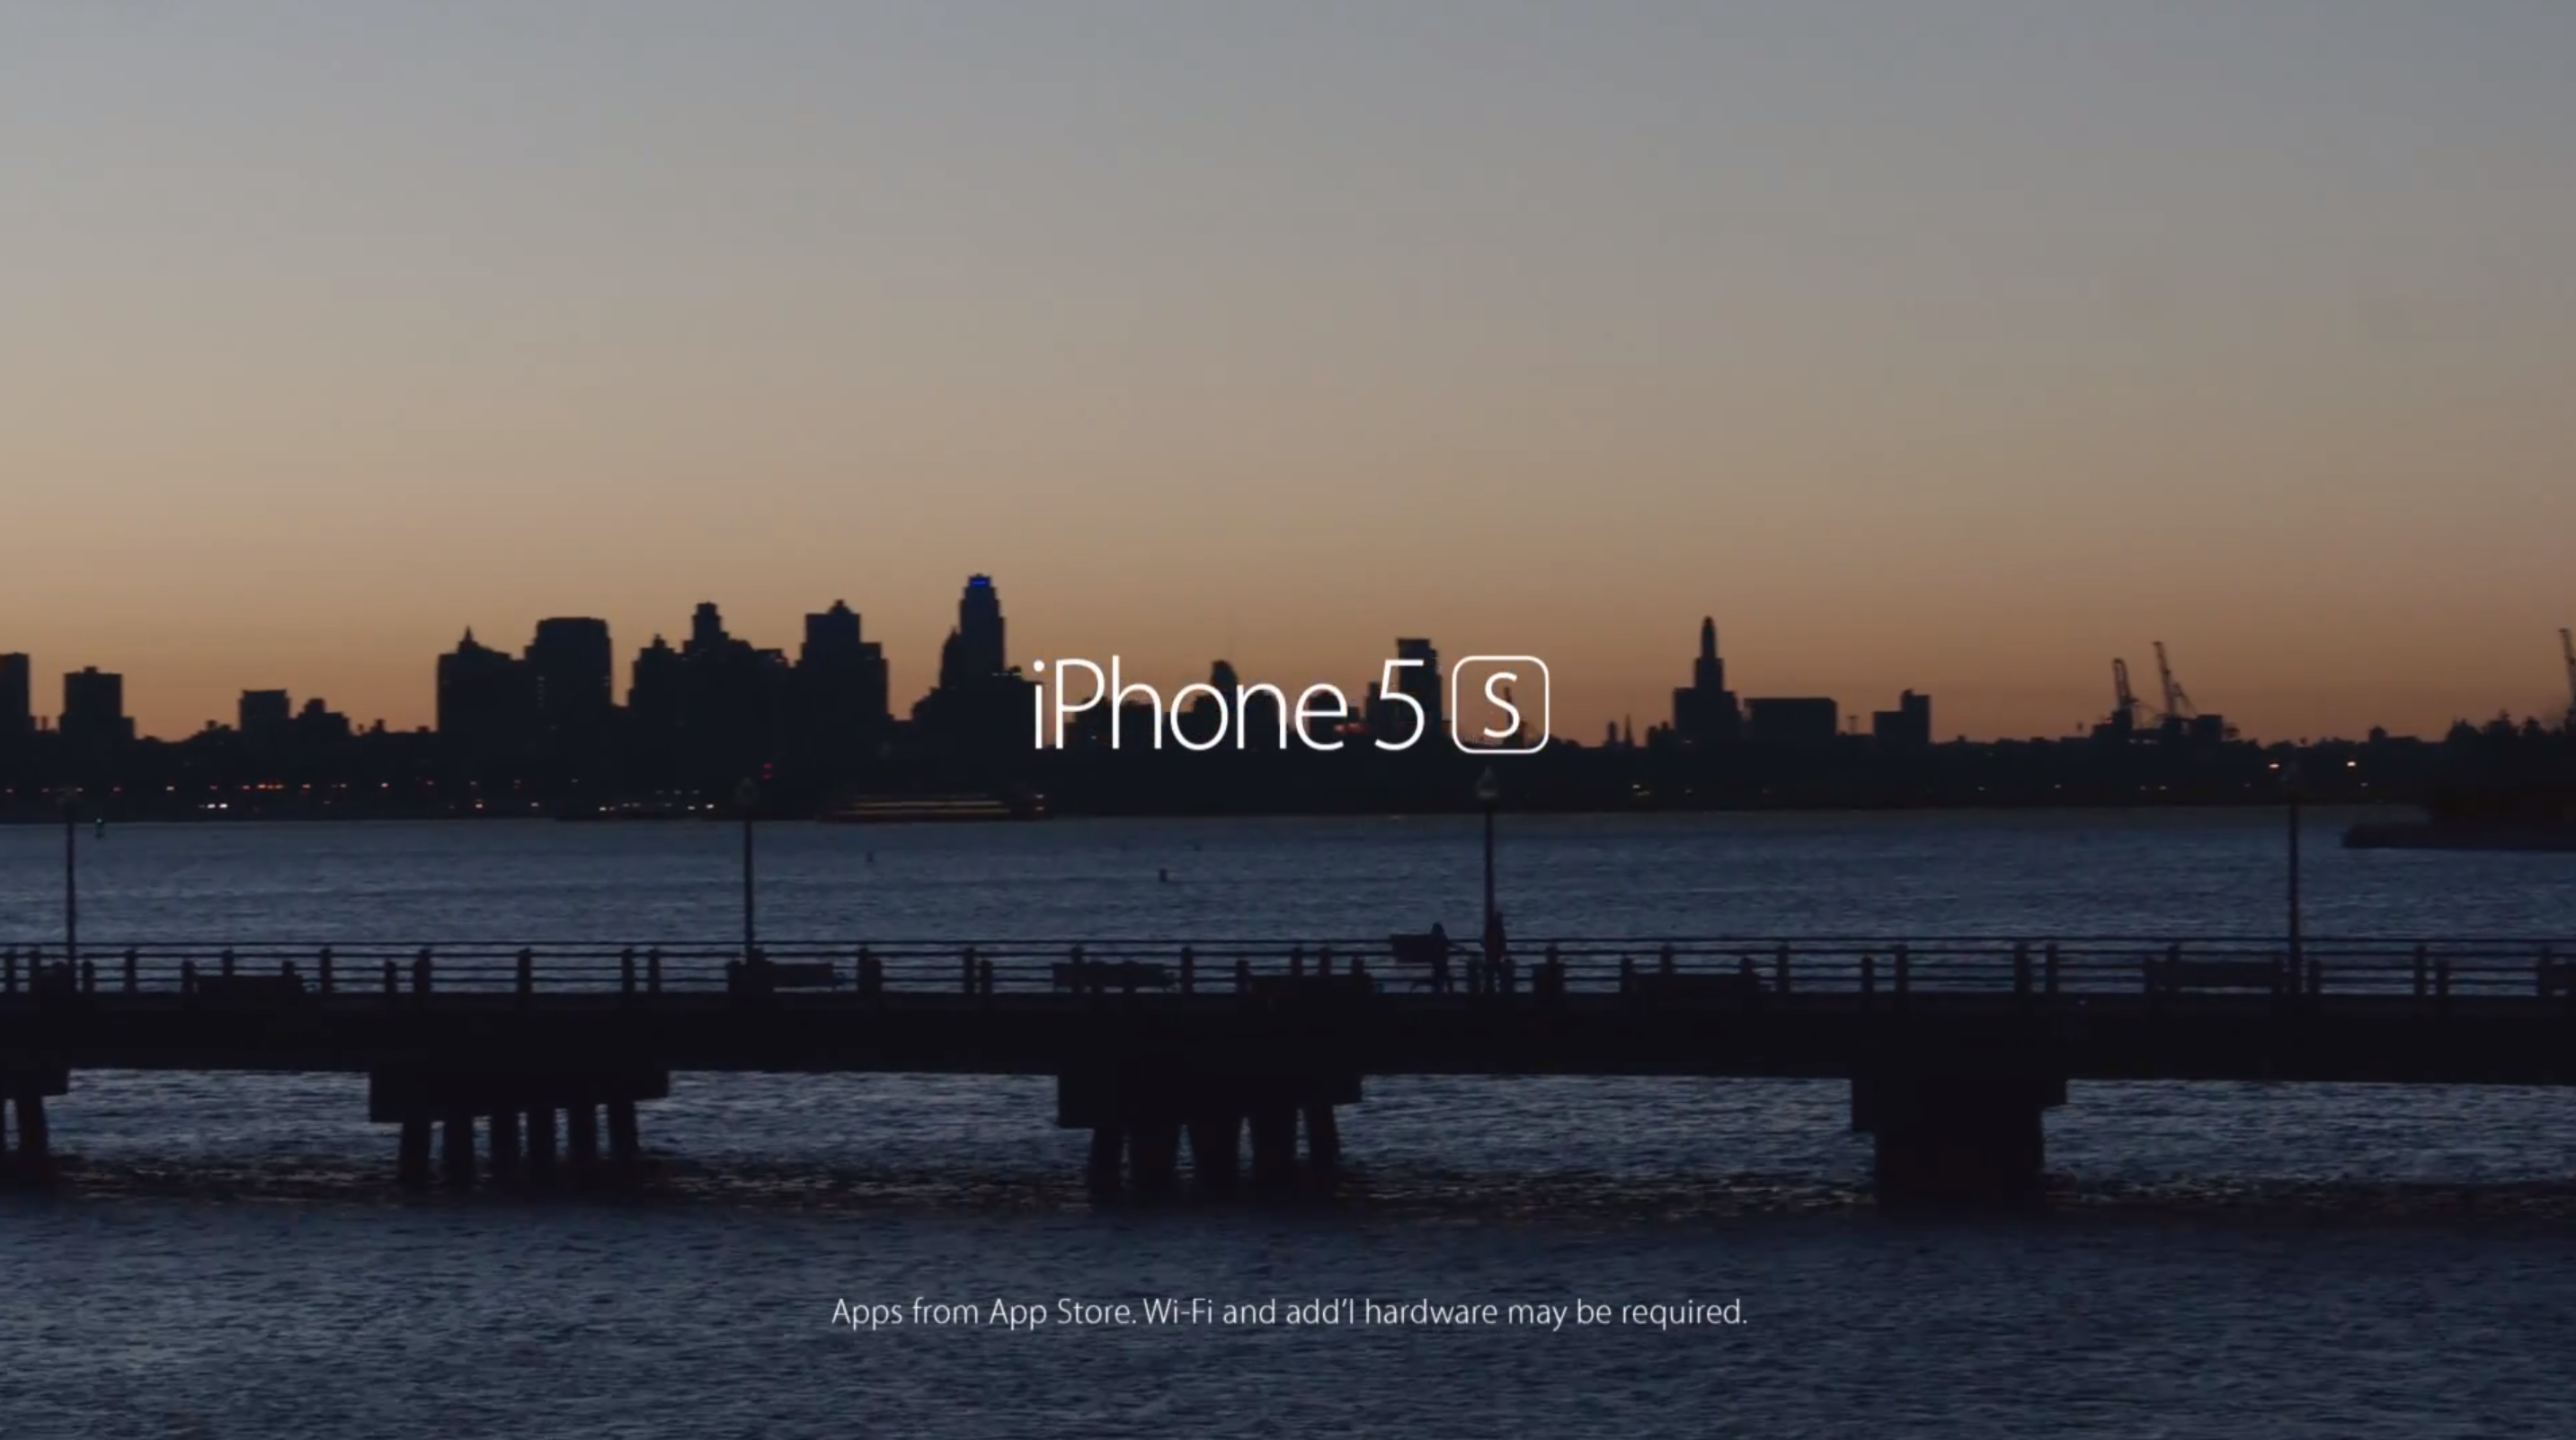 iphone 5s ad